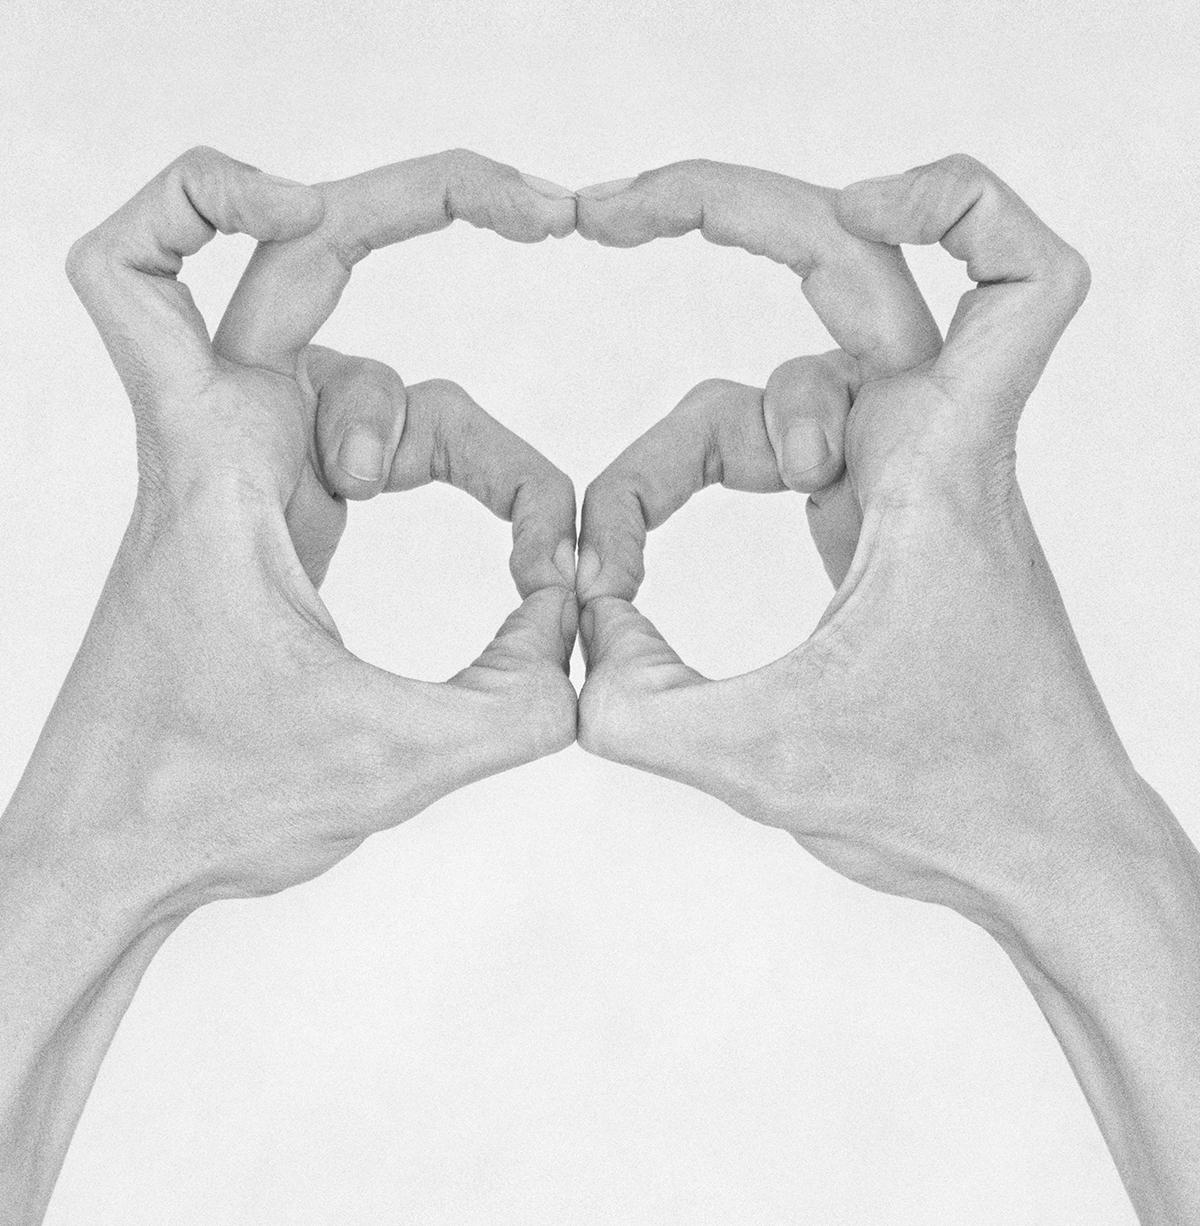 Ohne Titel XXXIV. Aus der Serie Chiromorphose. Die Hände. Schwarzweiß-Fotografie (Ästhetizismus), Photograph, von Nico Baixas / Gos-com-fuig